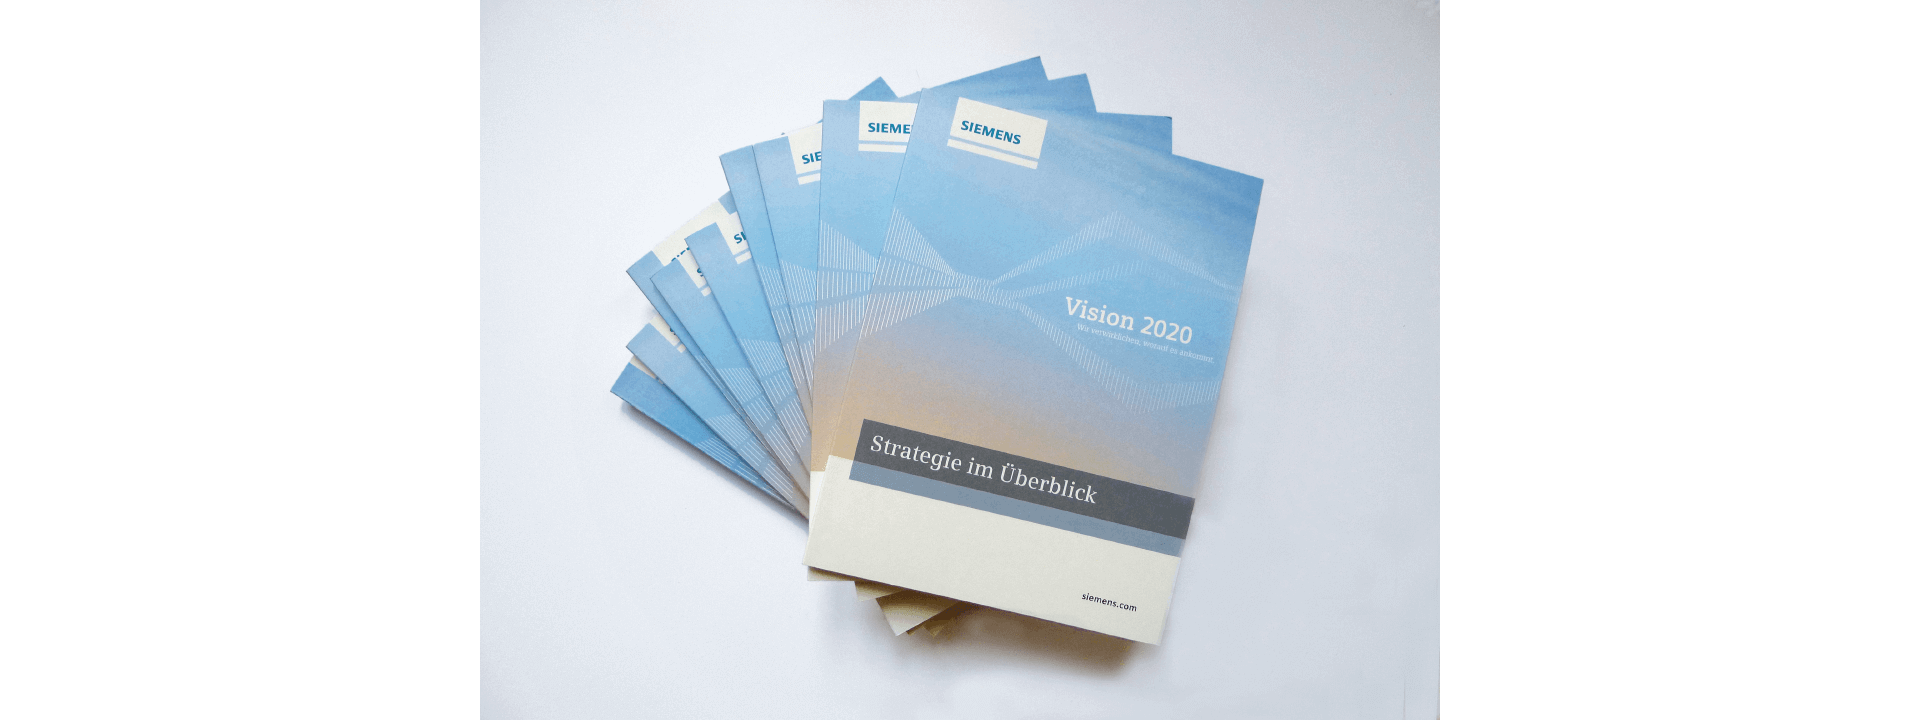 Cover des Siemens Geschäftsberichts 2014, mehrere Bücher liegen aufgefächert übereinander